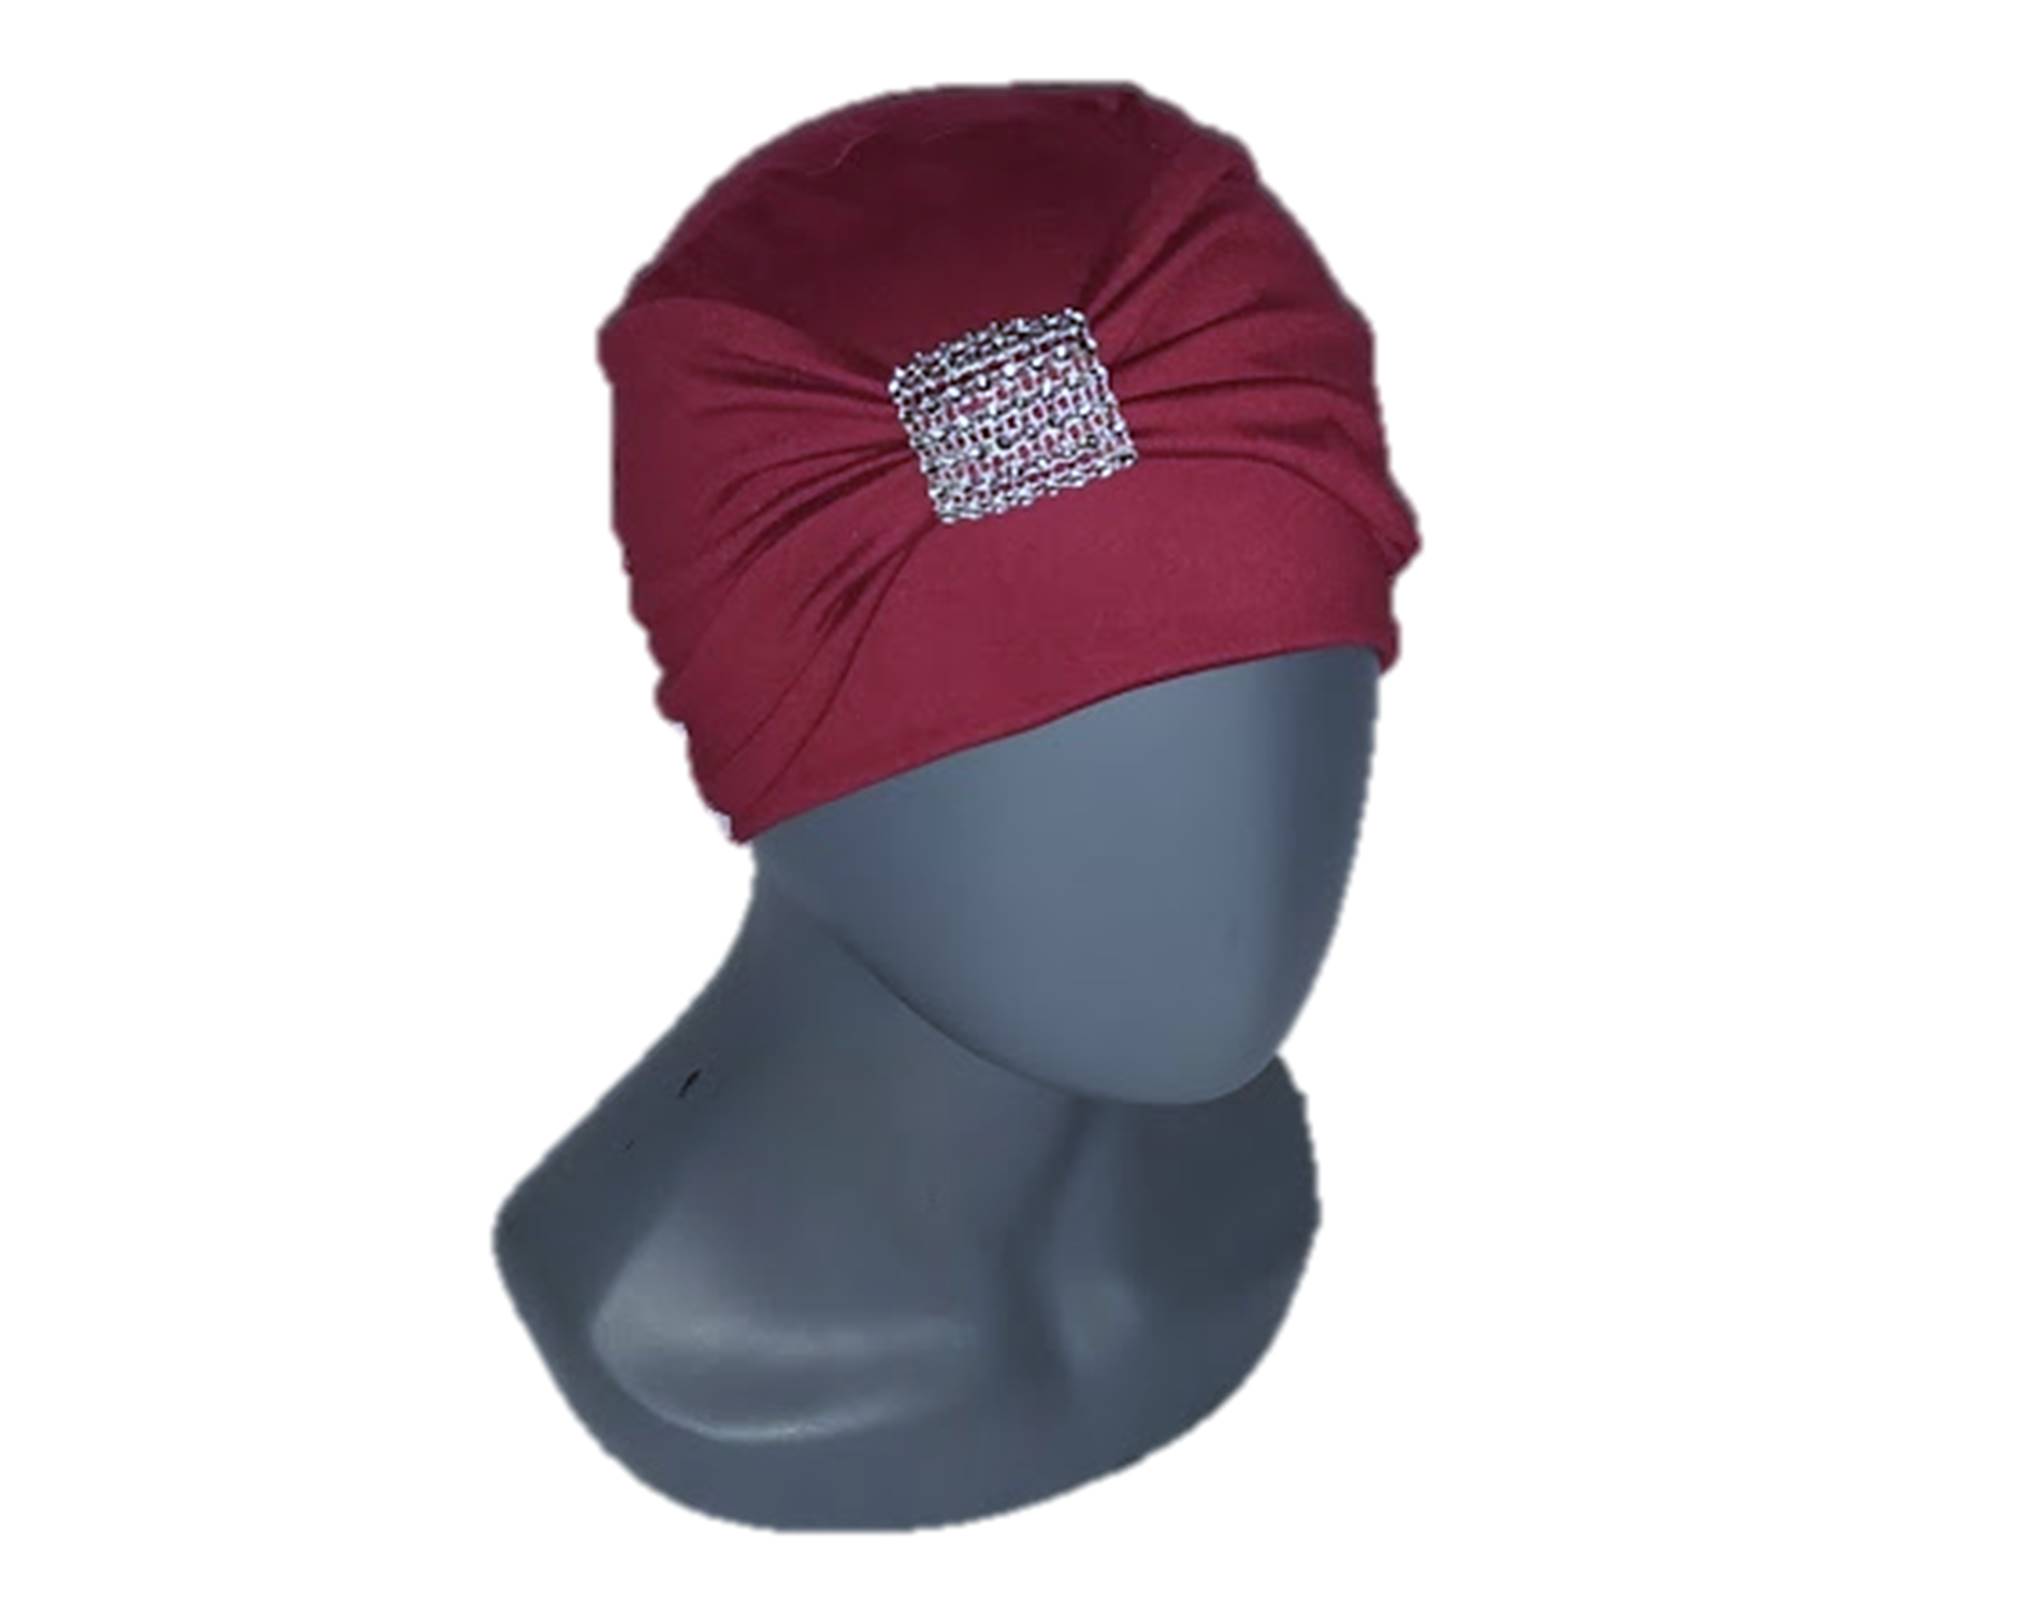 exilio el primero embrague Gorros para Mujer tipo turbantes con banda de algodón seda (pack 2 piezas:  Negro y tinto). Oncologicos, alopecia, Moda, elegante